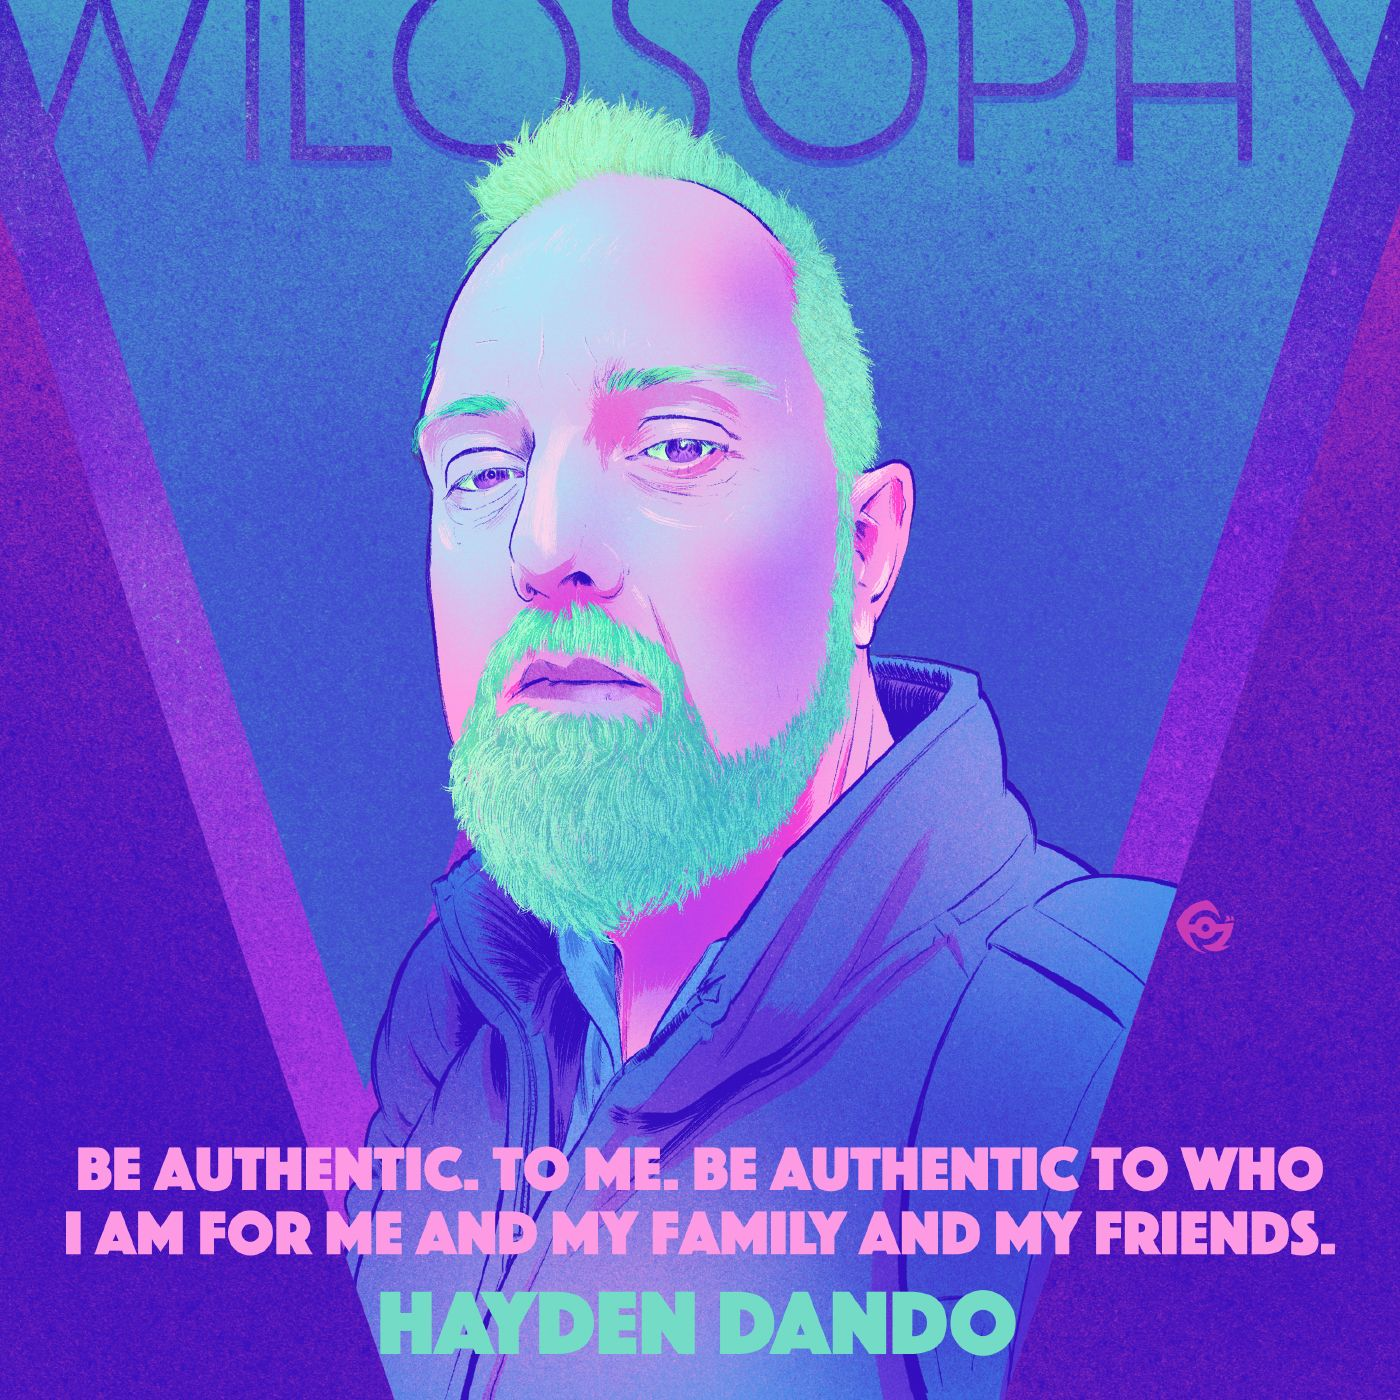 WILOSOPHY with Hayden Dando